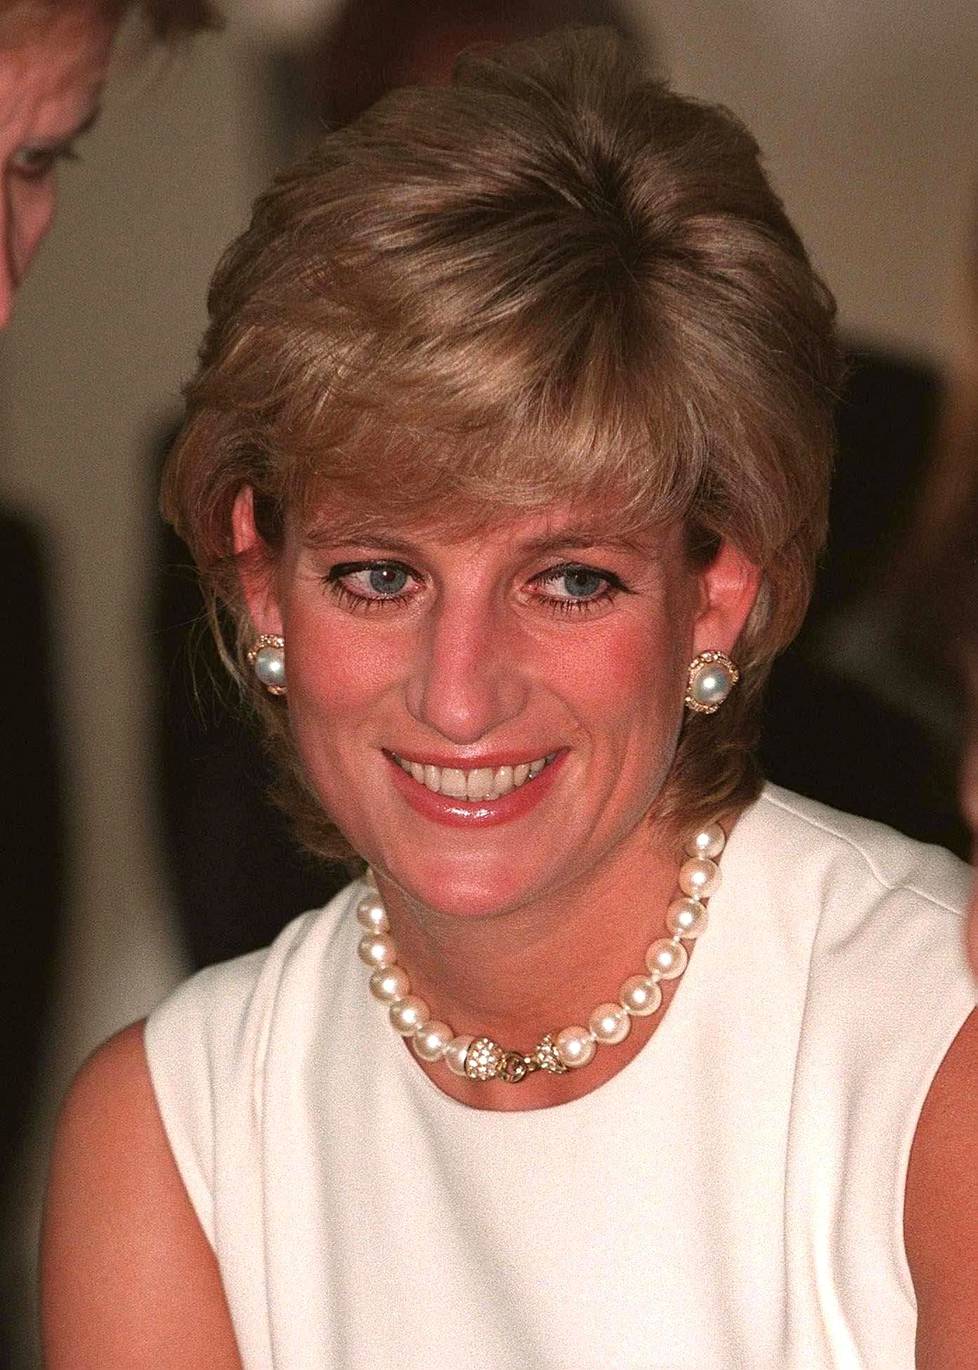 Prinsessa Diana menehtyi elokuussa 1997 auto-onnettomuudessa. Harry on kertonut pitävänsä paparazzeja osasyyllisenä äitinsä kuolemaan.